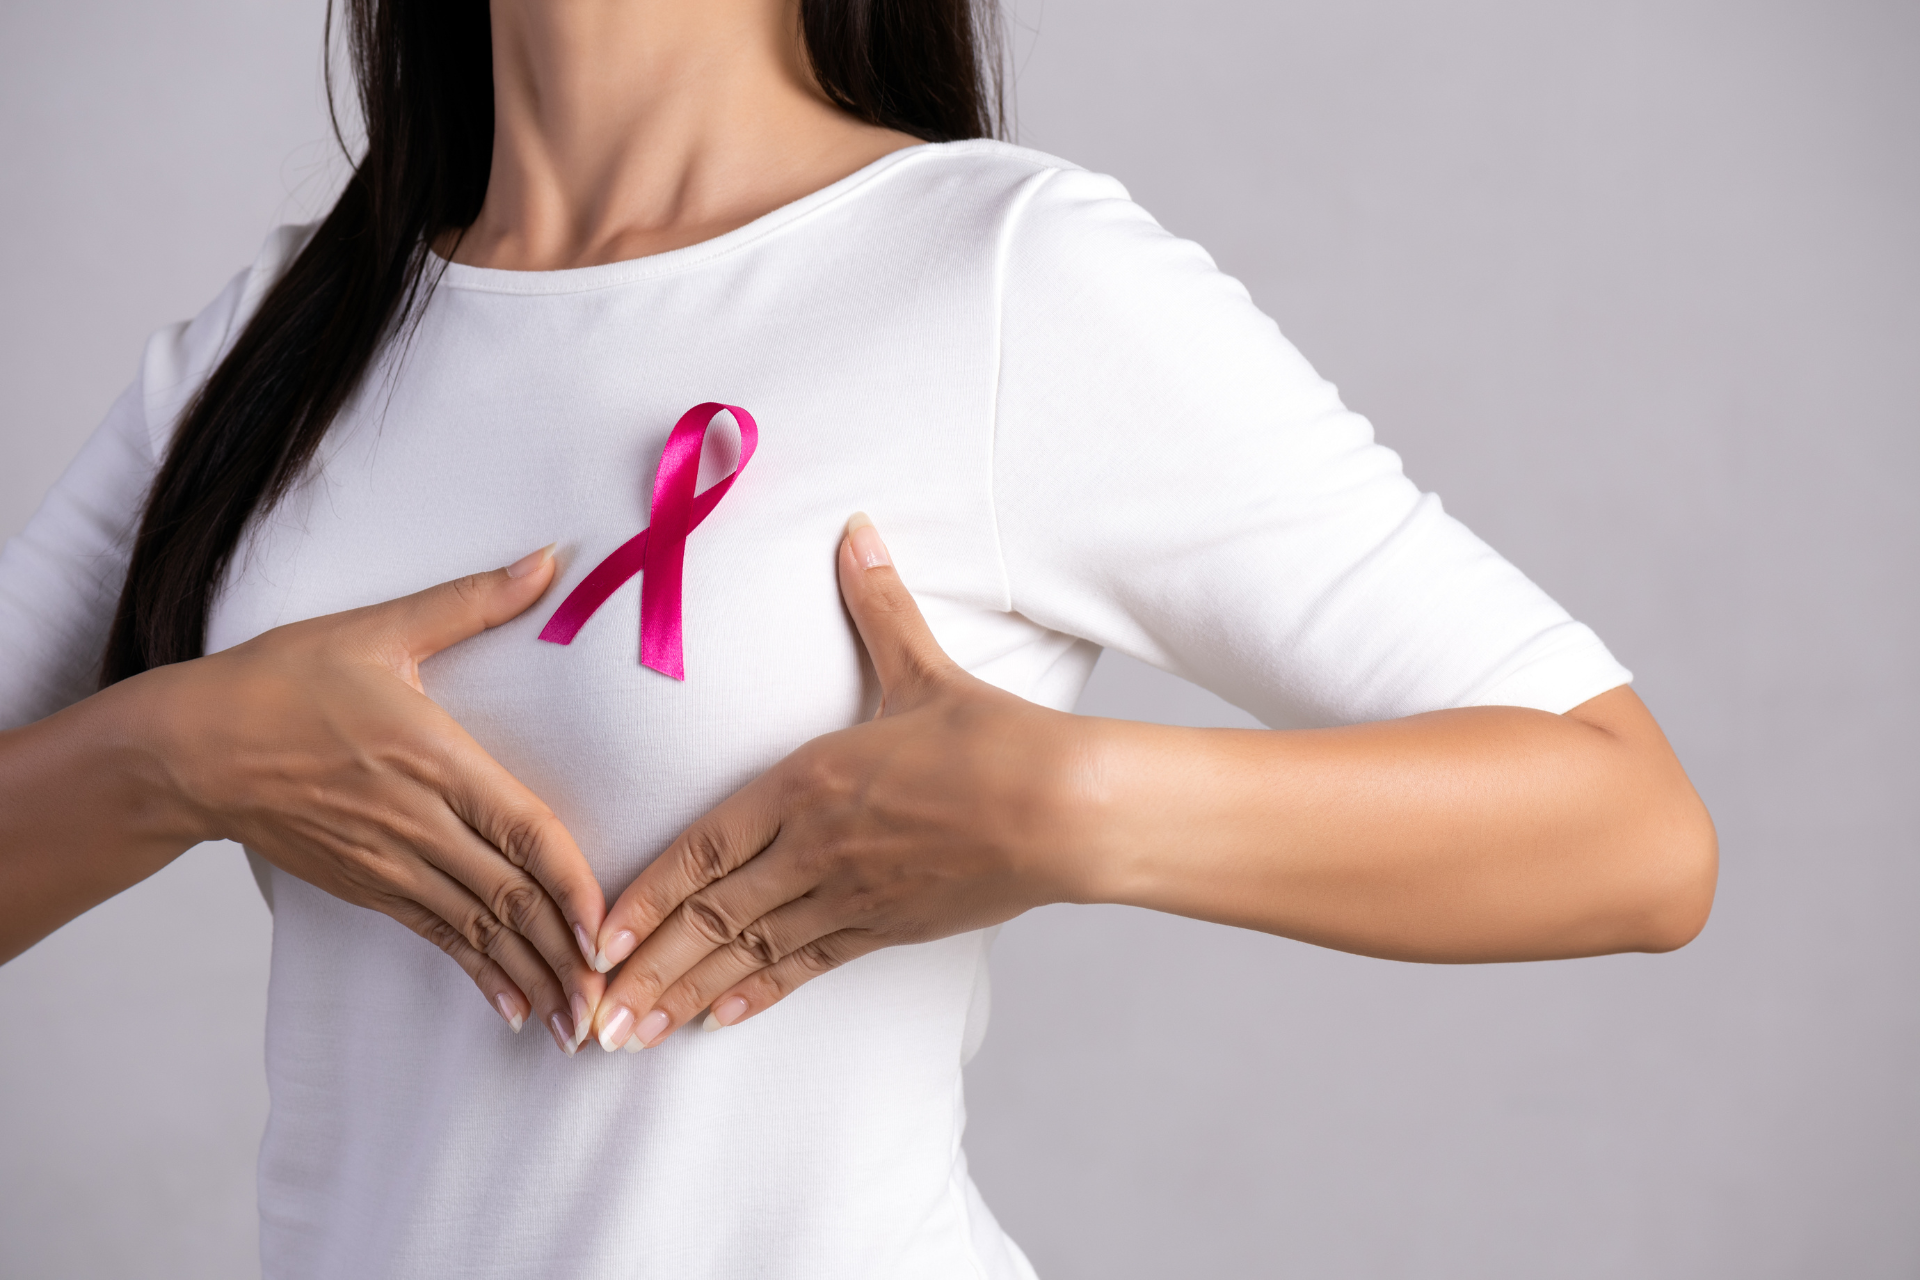 Il nastro rosa, simbolo della prevenzione oncologica femminile